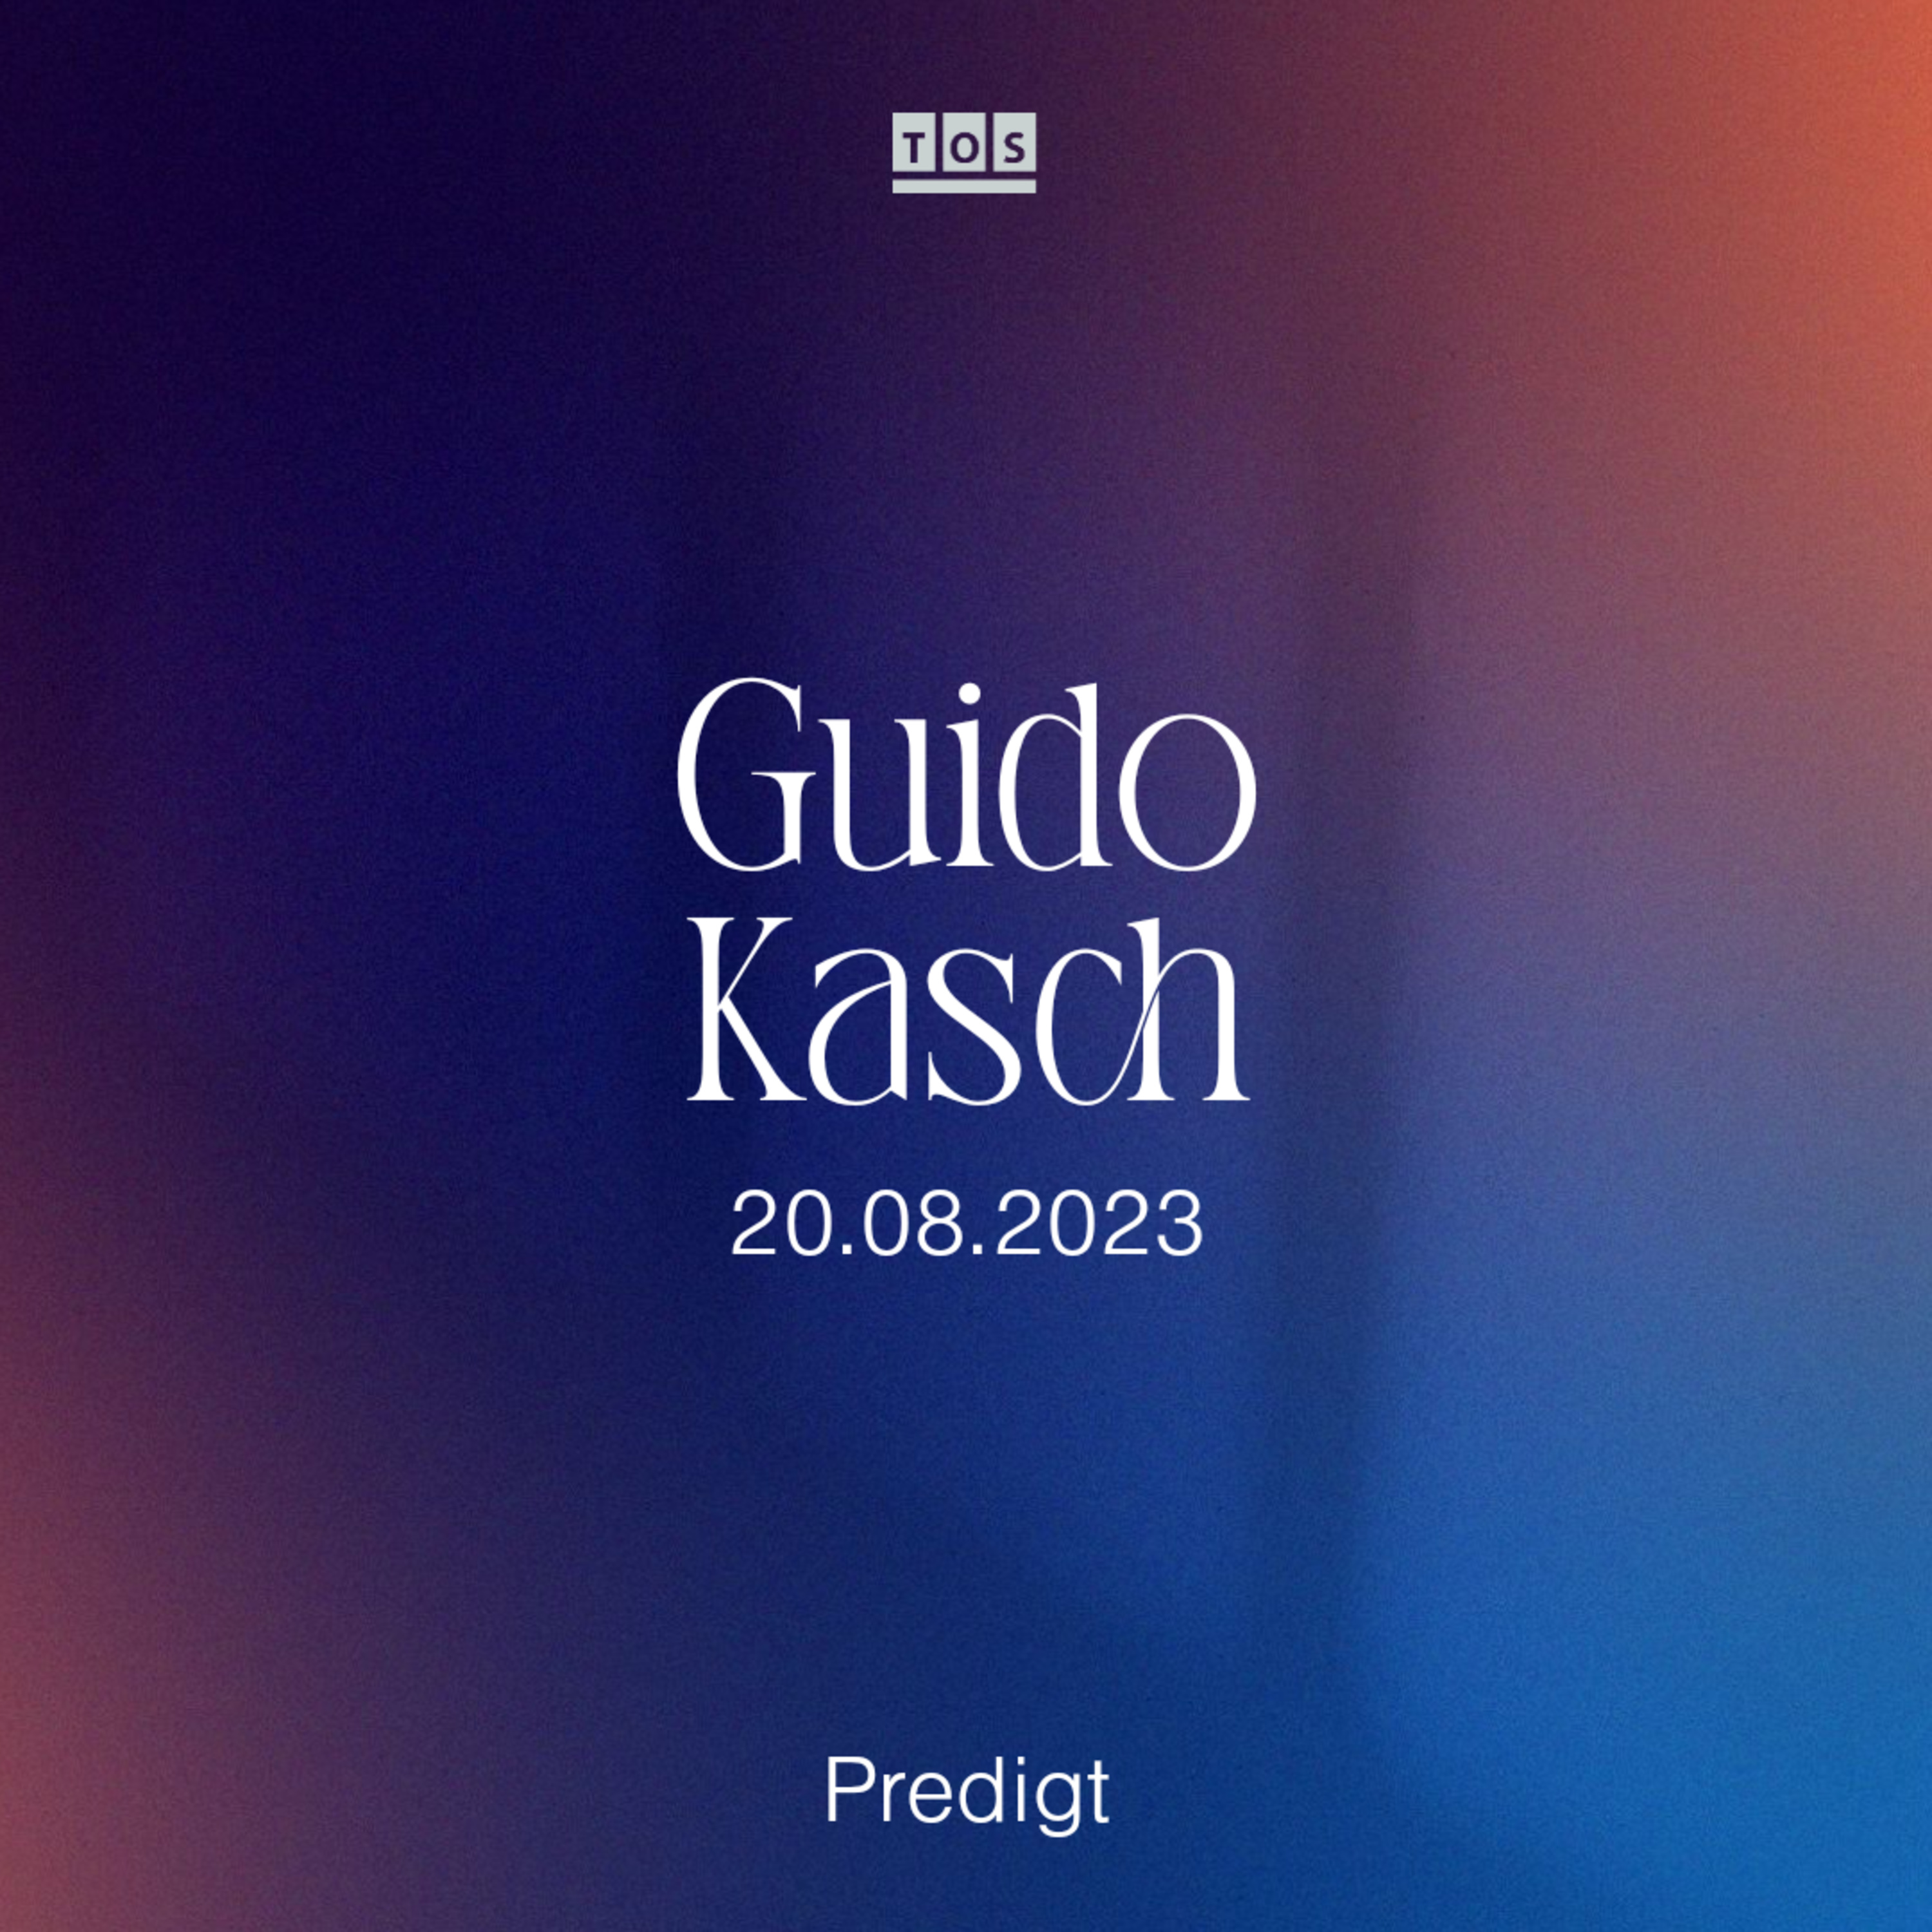 Guido Kasch - 20.08.2023 hero artwork